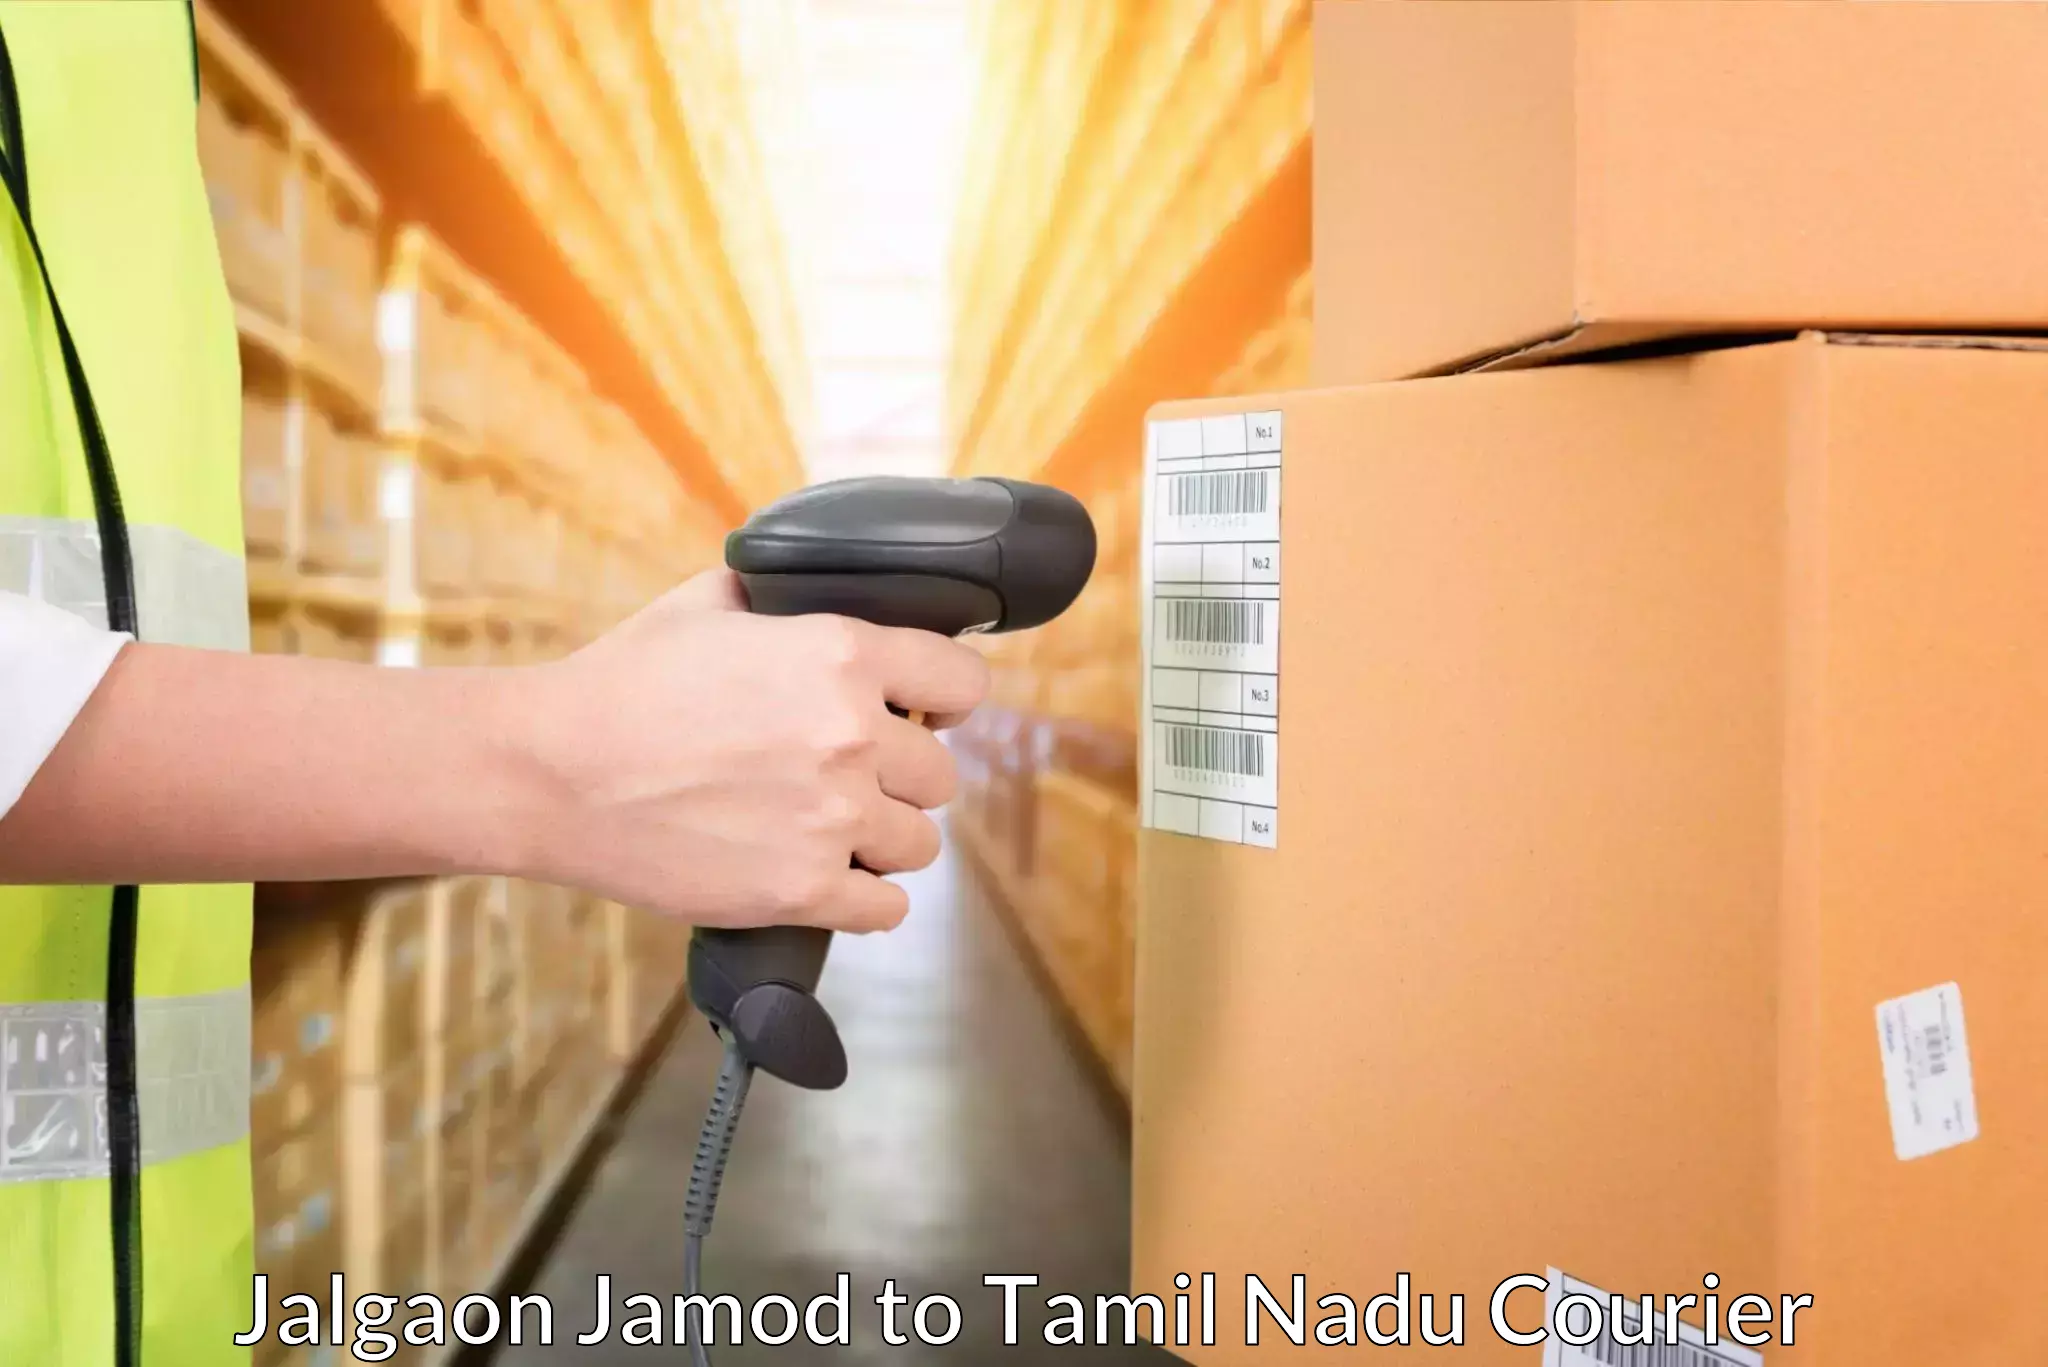 Cash on delivery service Jalgaon Jamod to Ponnamaravathi